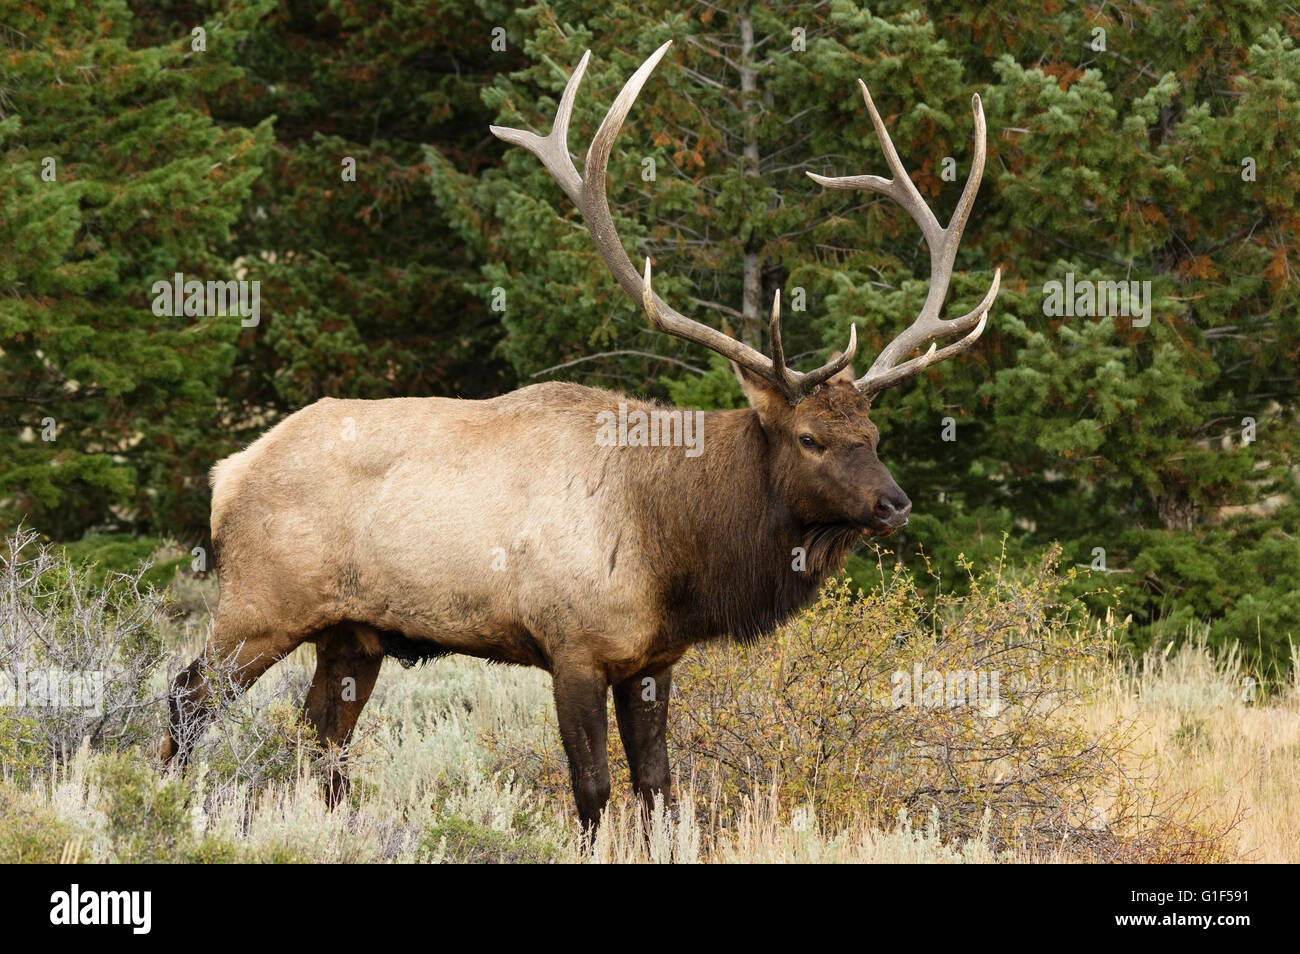 Bull elk o Cervus elaphus de pie en una pradera delante de pinos. Foto de stock